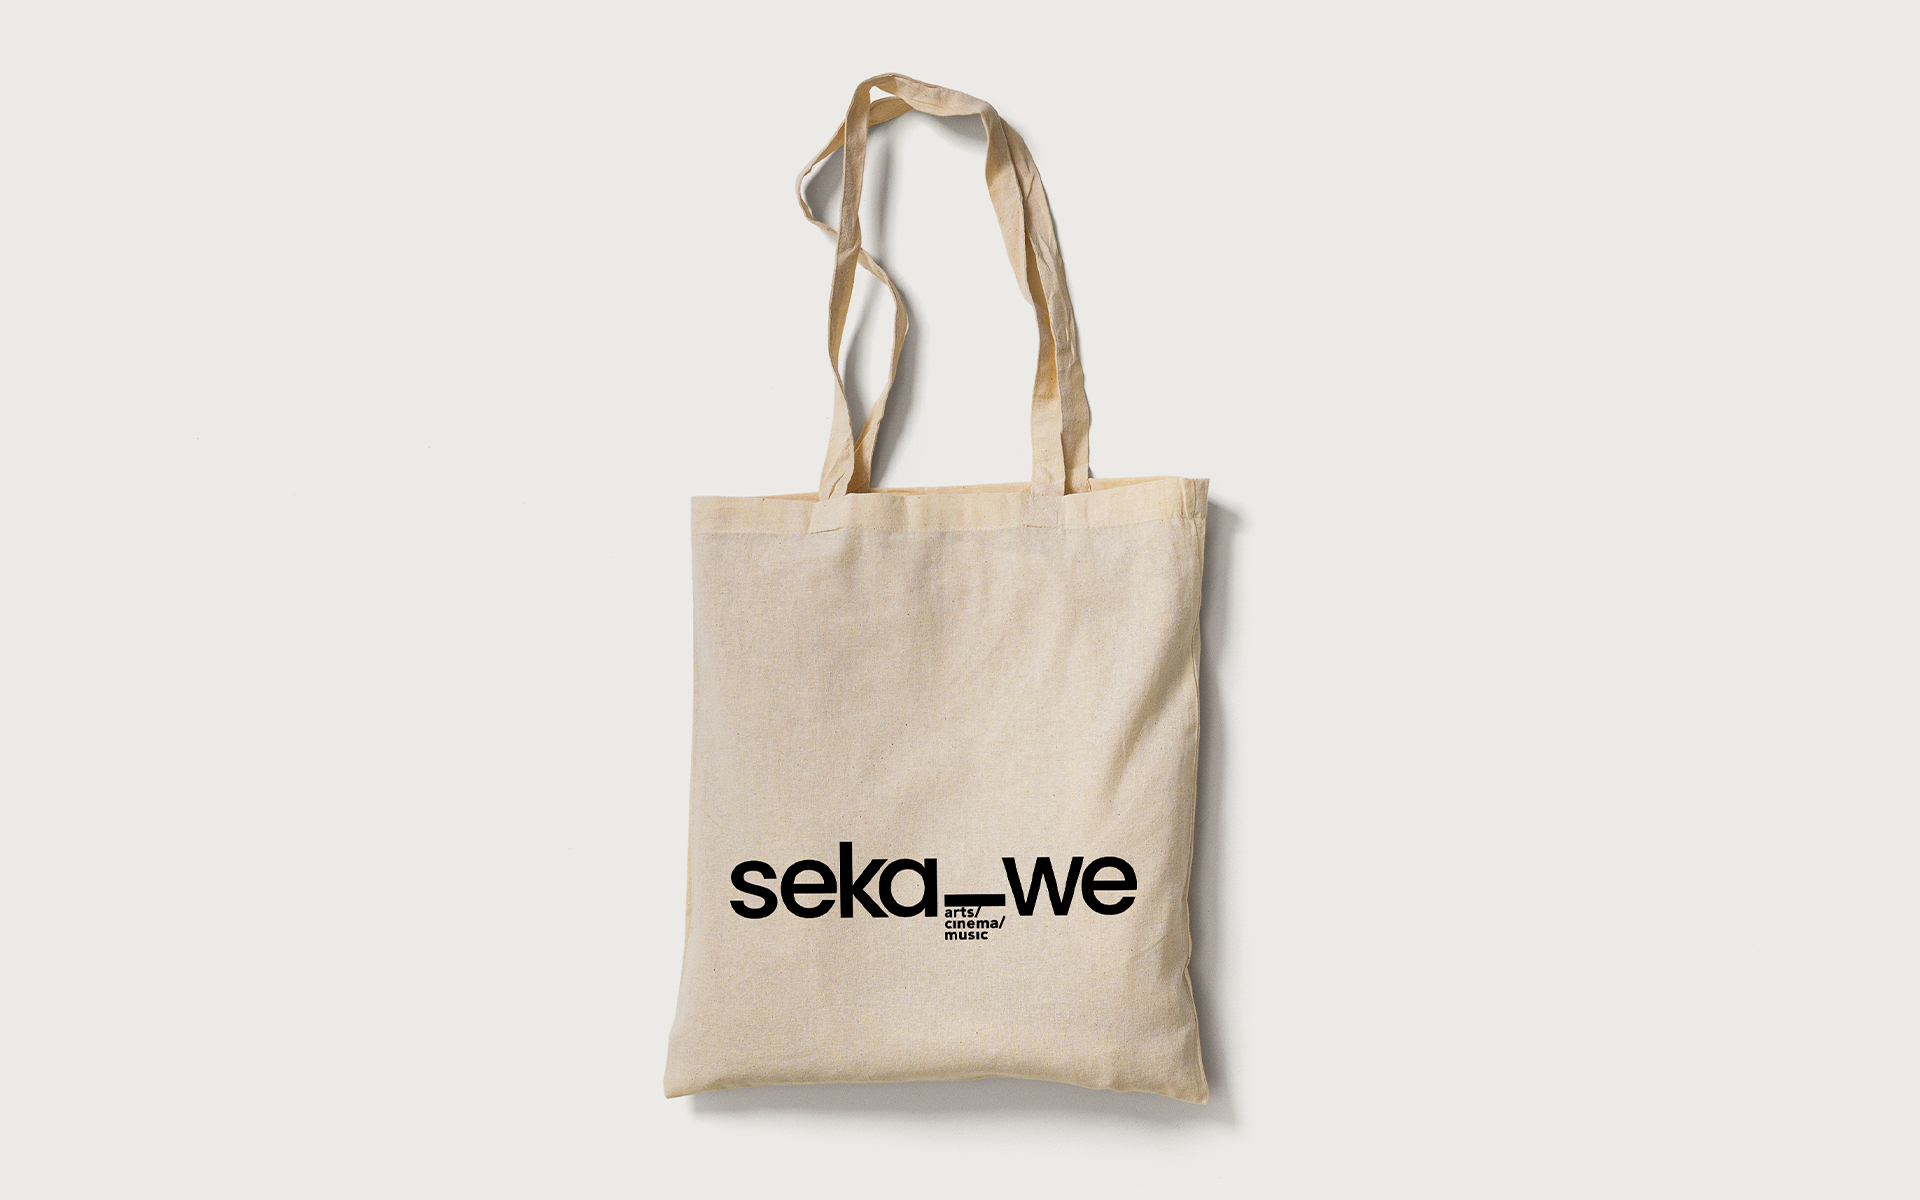 Sekawe design by Lycacc